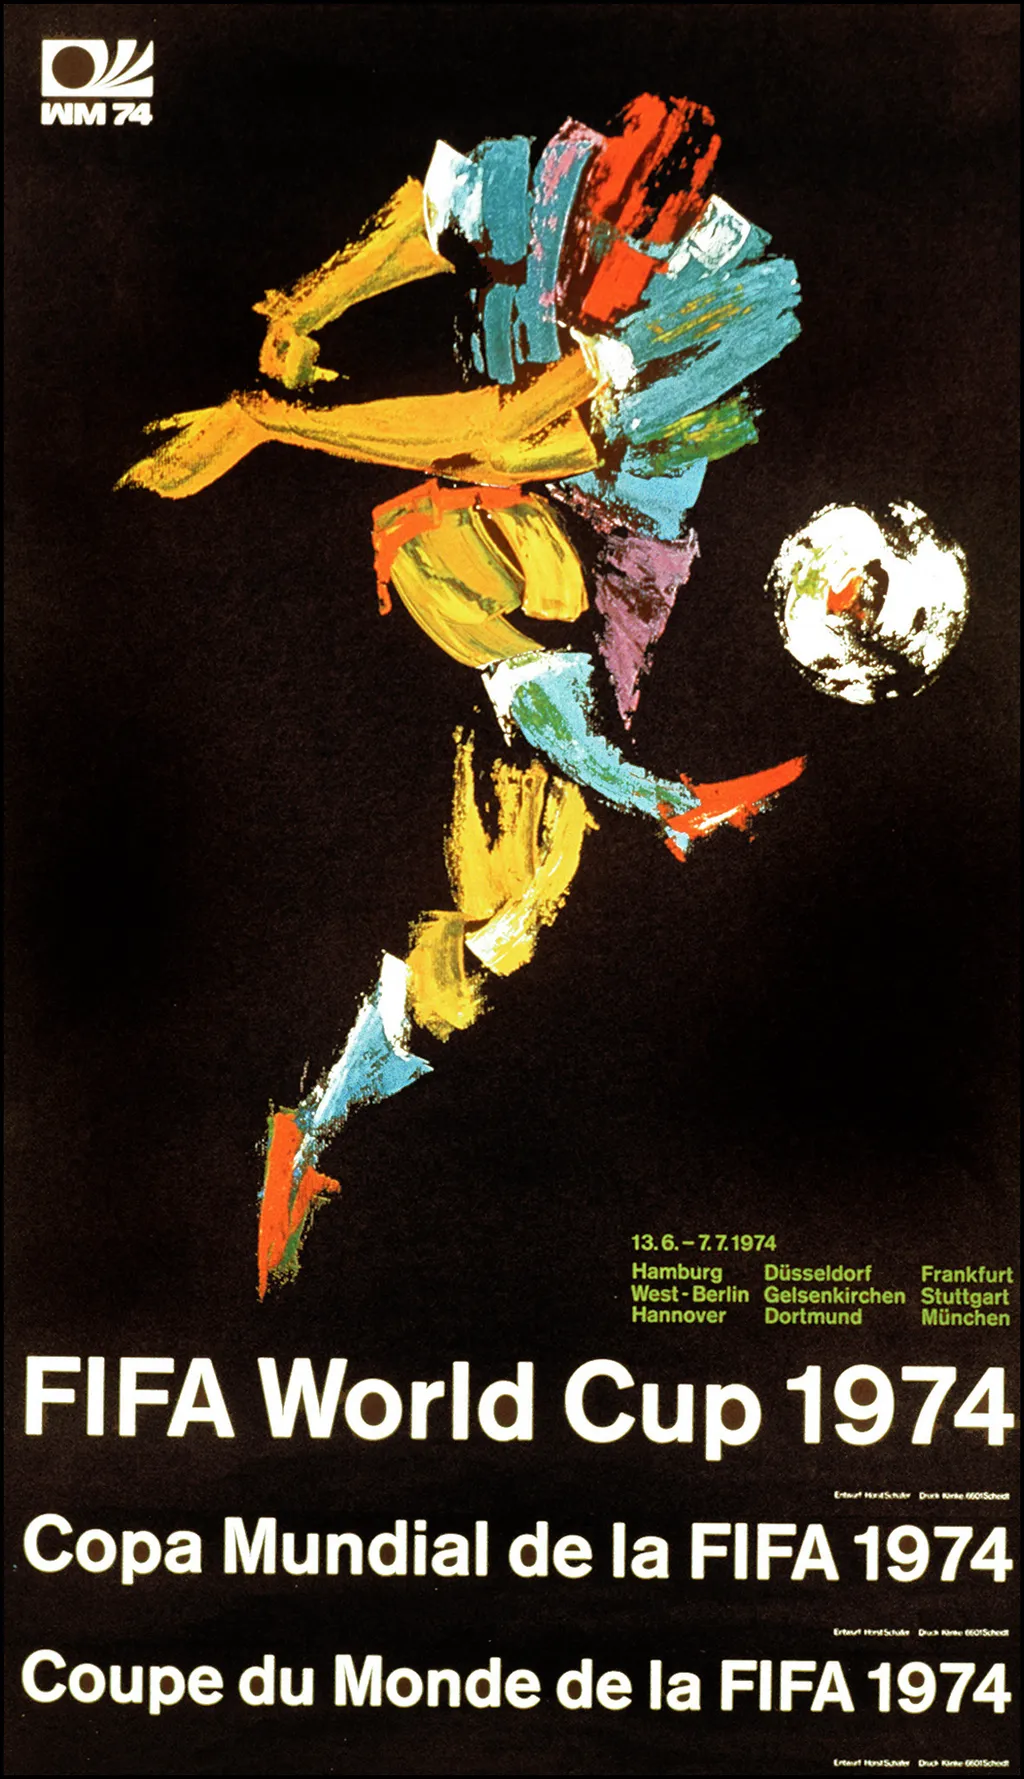 Labdarúgó-világbajnokság, labdarúgóvébé, futballvébé, labdarúgás, hivatalos plakát, poszter, 1974, Németország 